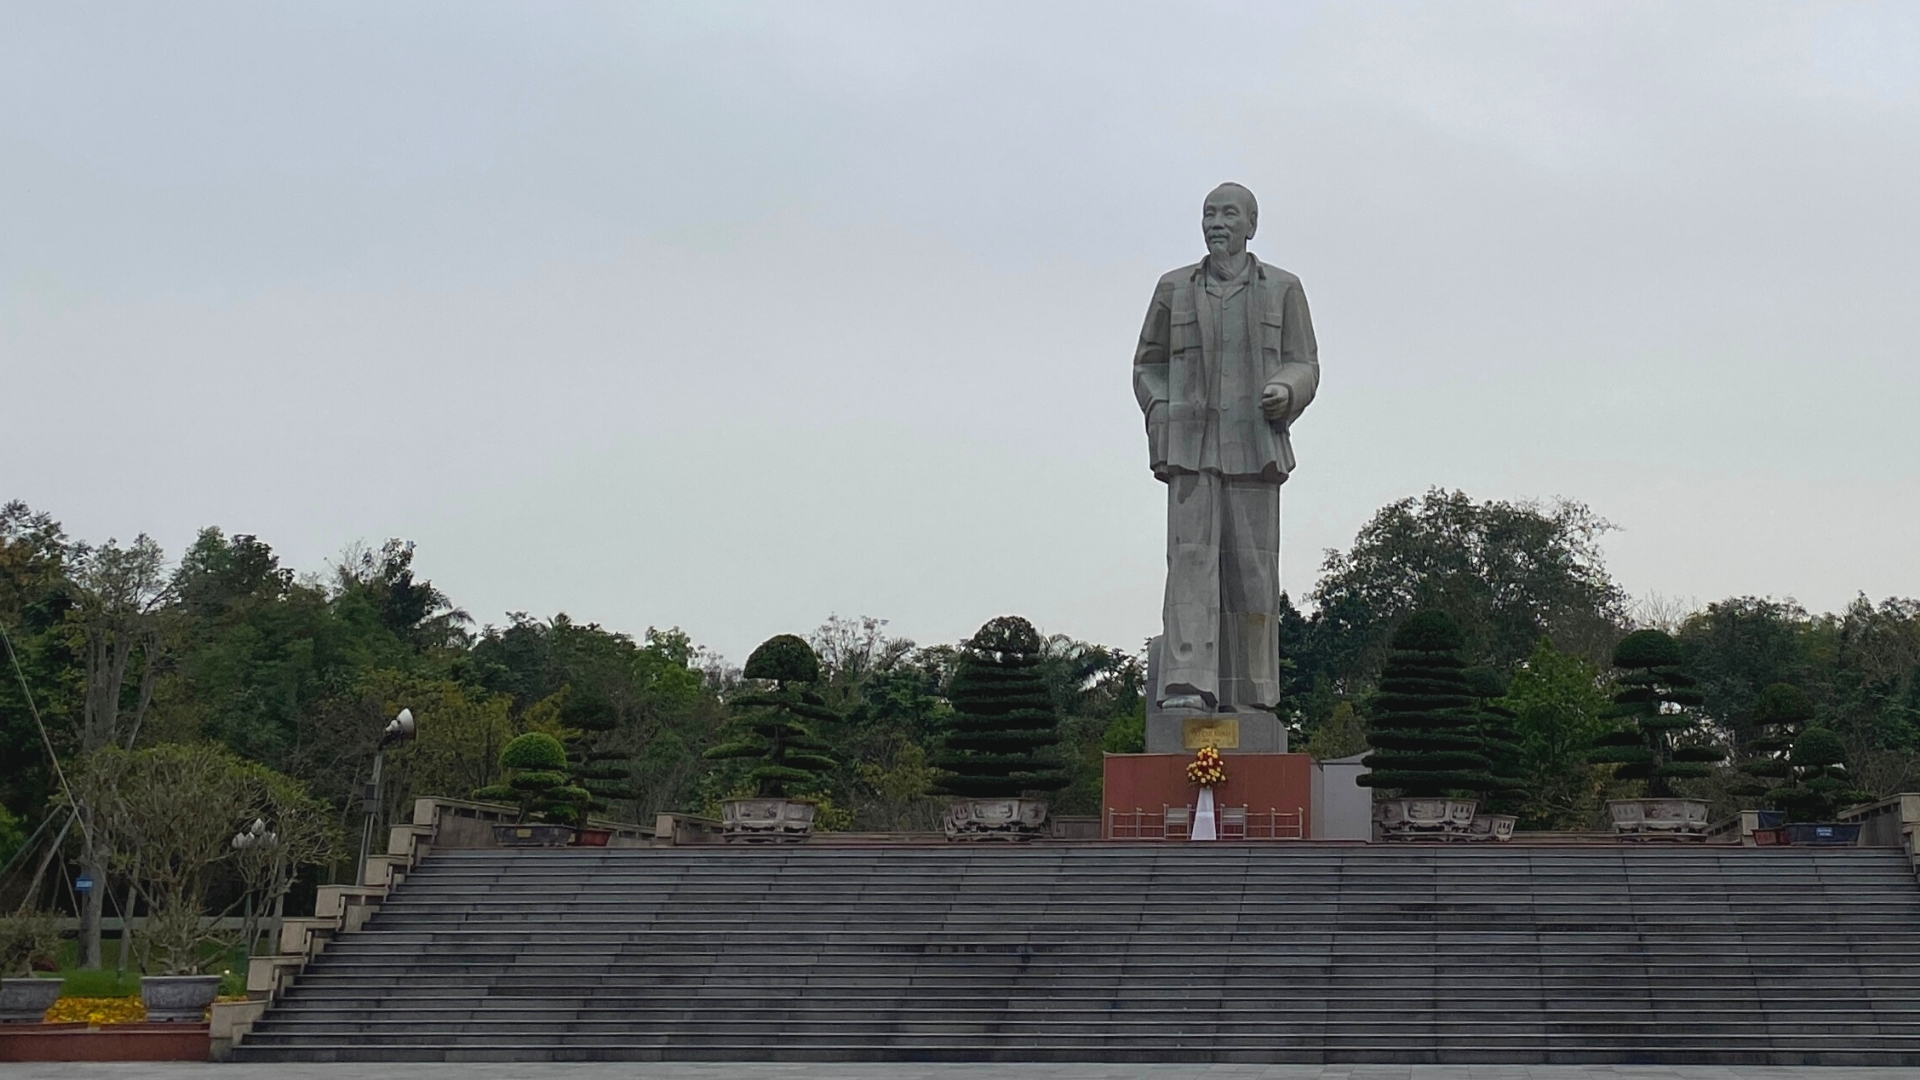 Đến TP. Vinh thăm Bác ở Quảng trường Hồ Chí Minh và khám phá phía sau tượng đài